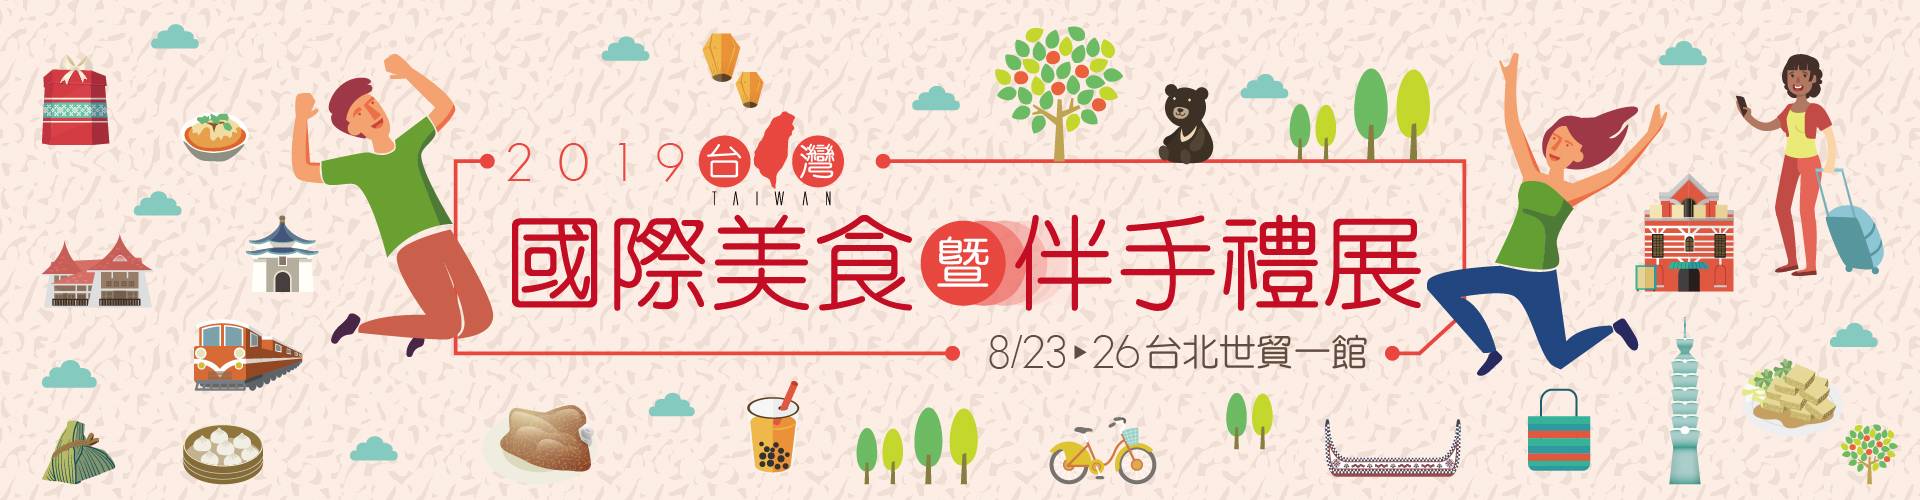 2019台灣國際美食暨伴手禮展